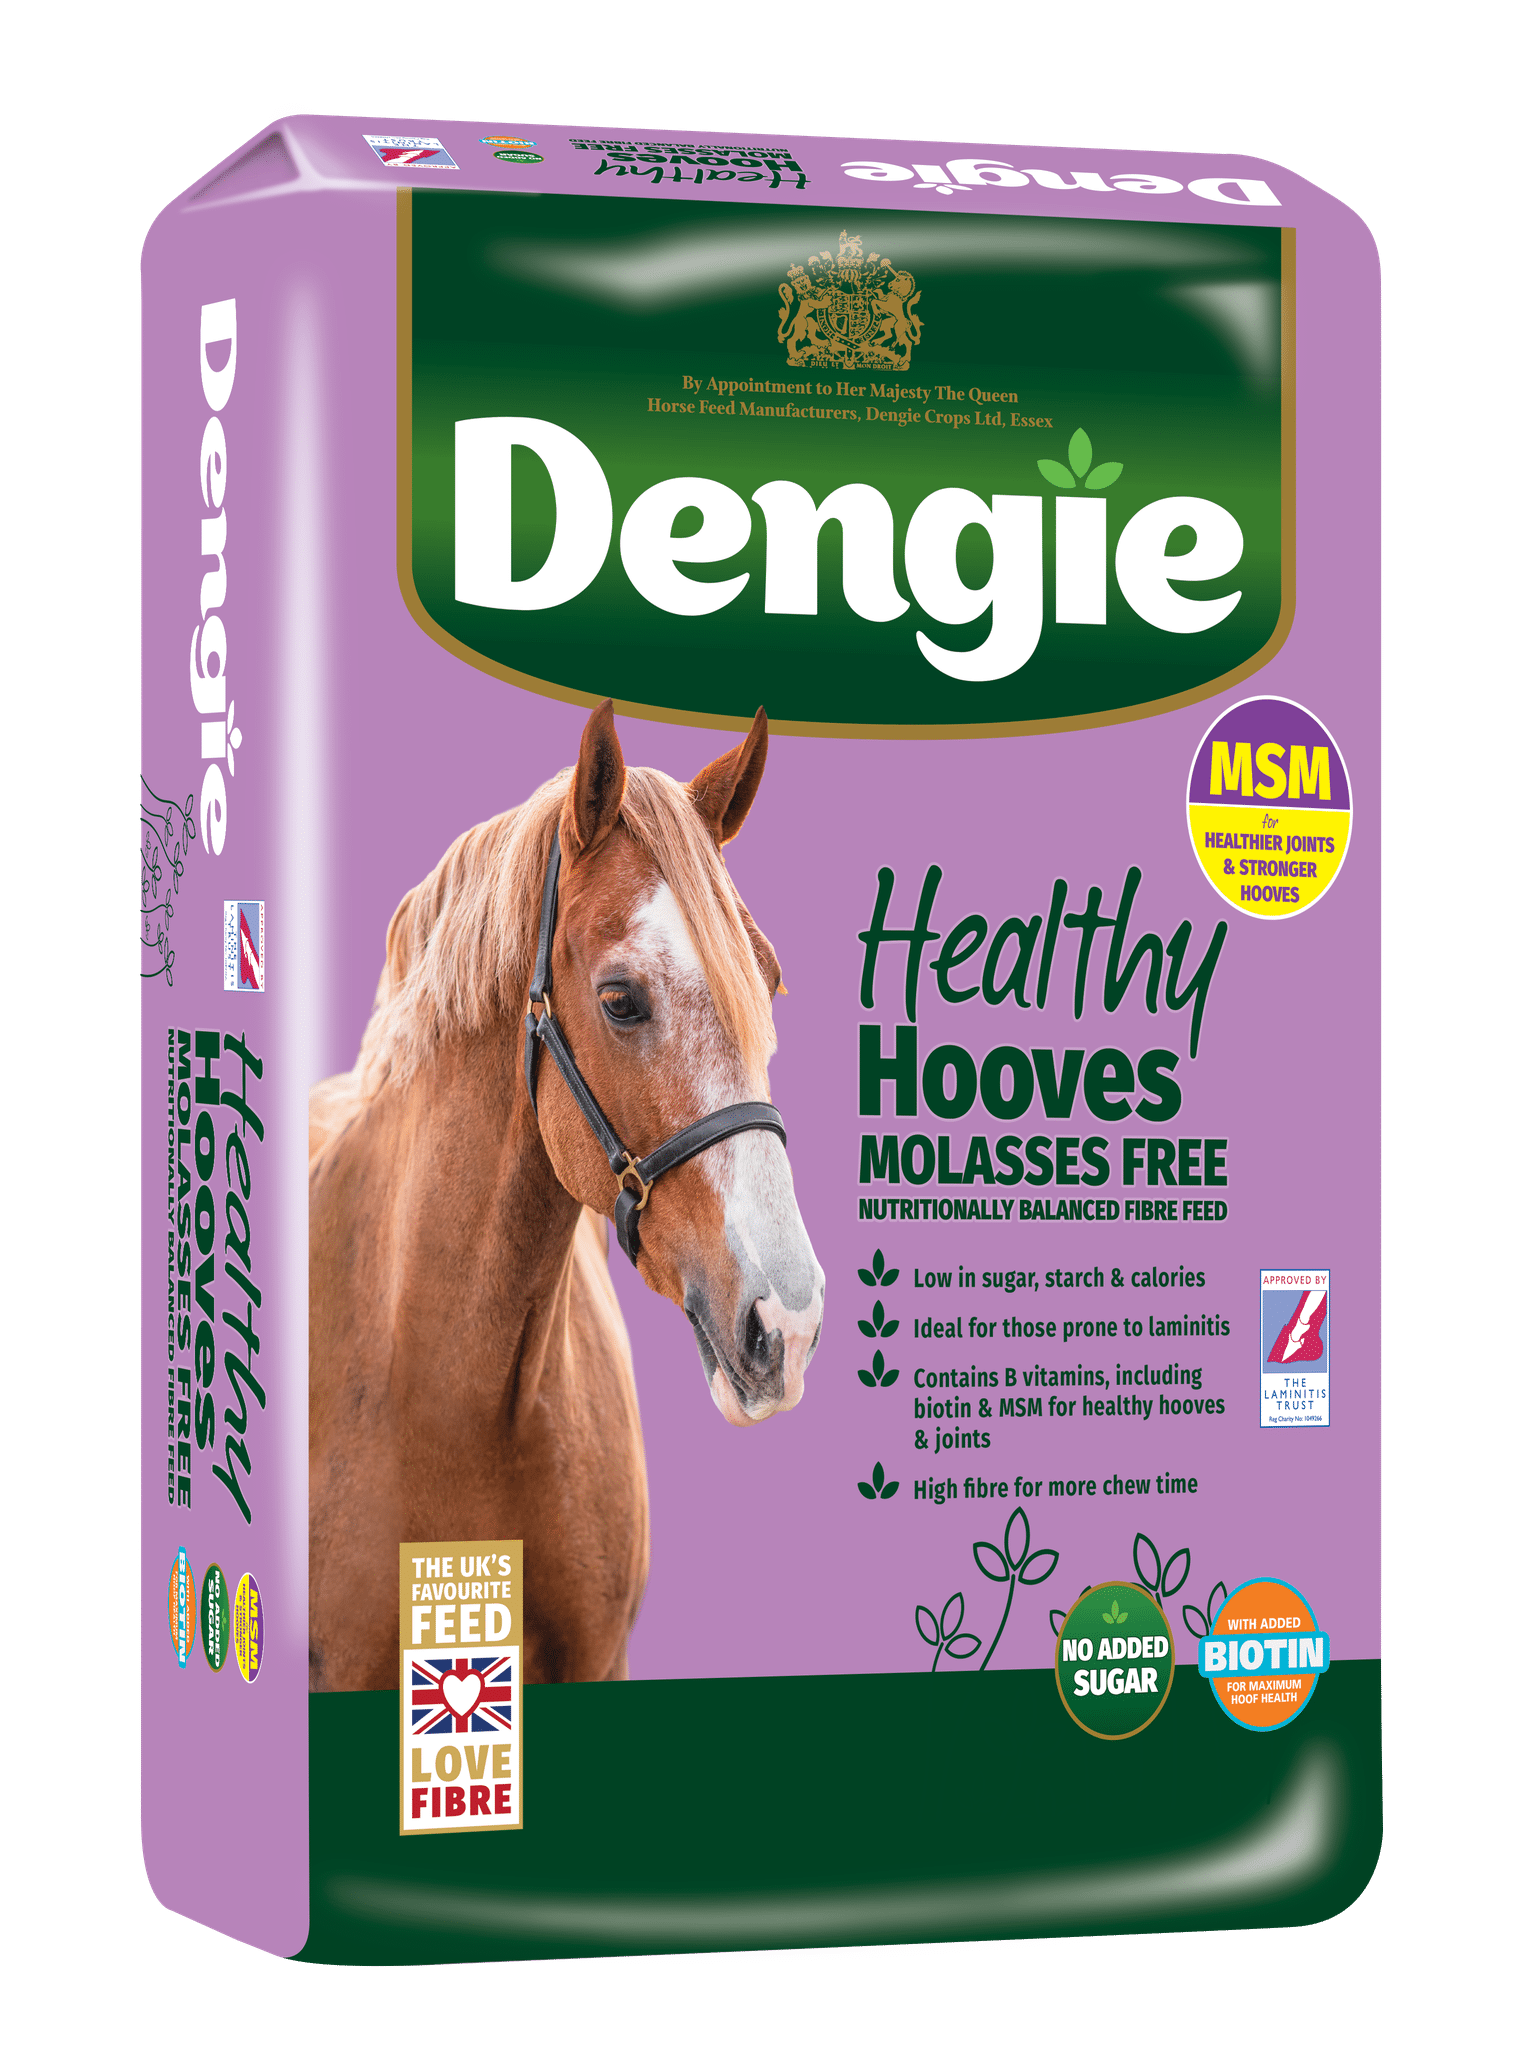 Dengie Healthy Hooves Molasses Free z MSM 20kg - sieczka dla koni z dodatkiem biotyny